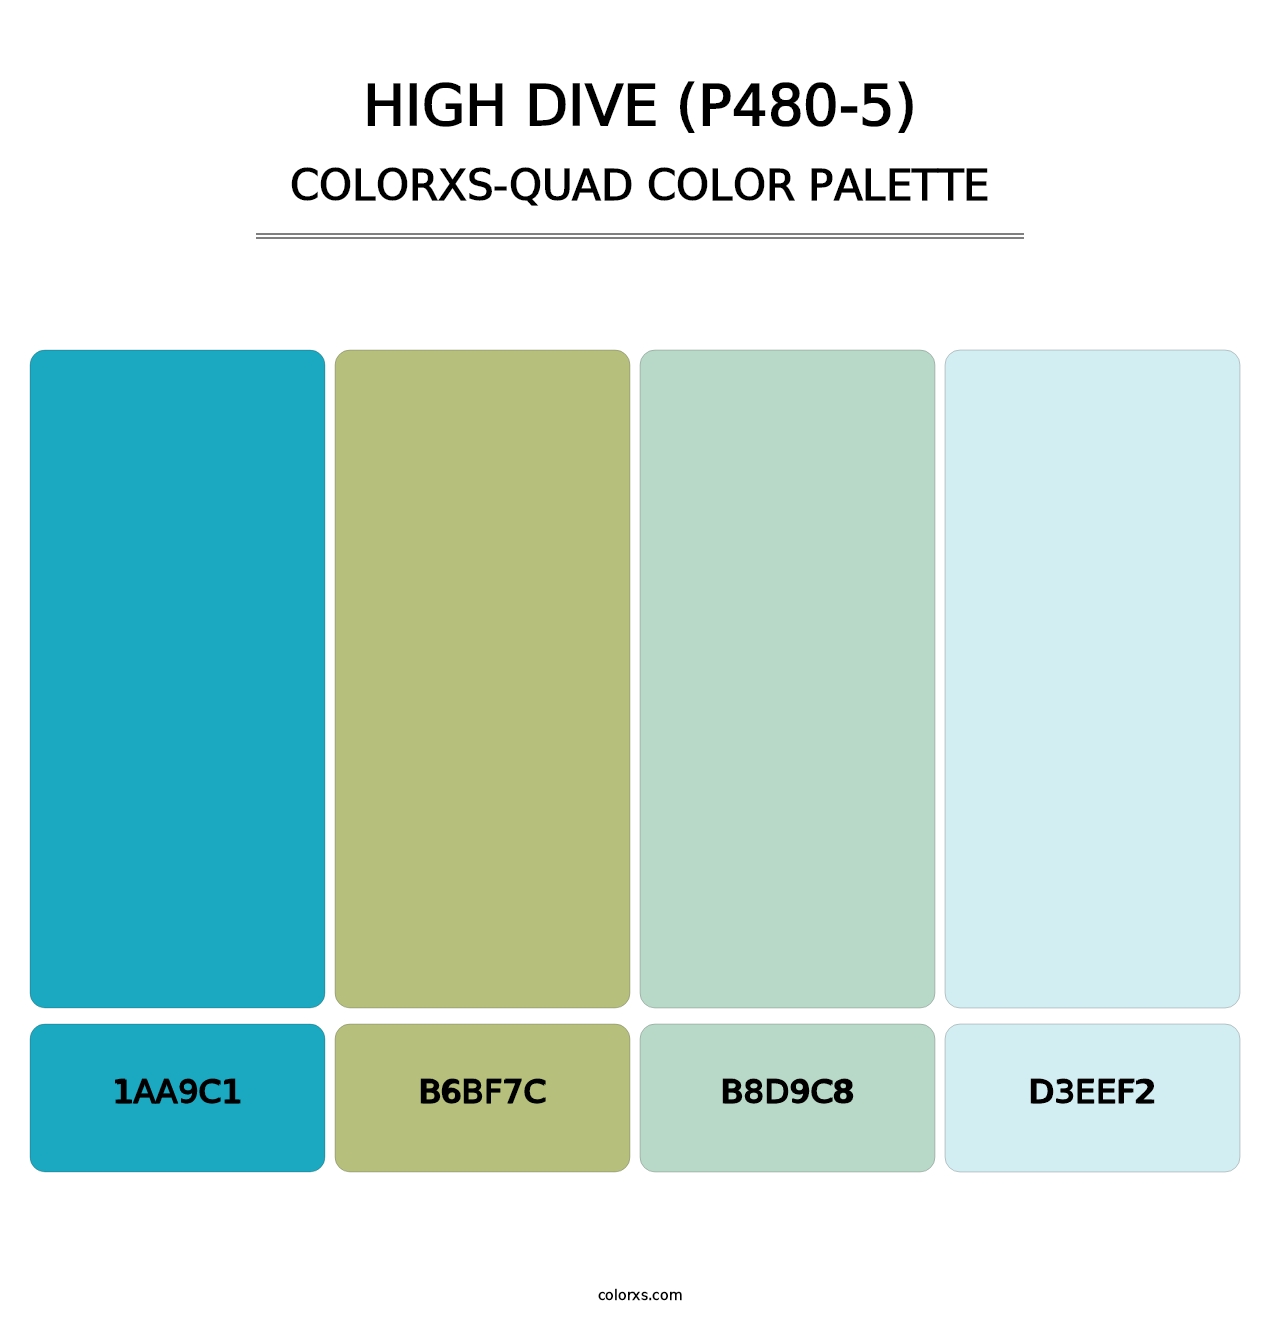 High Dive (P480-5) - Colorxs Quad Palette